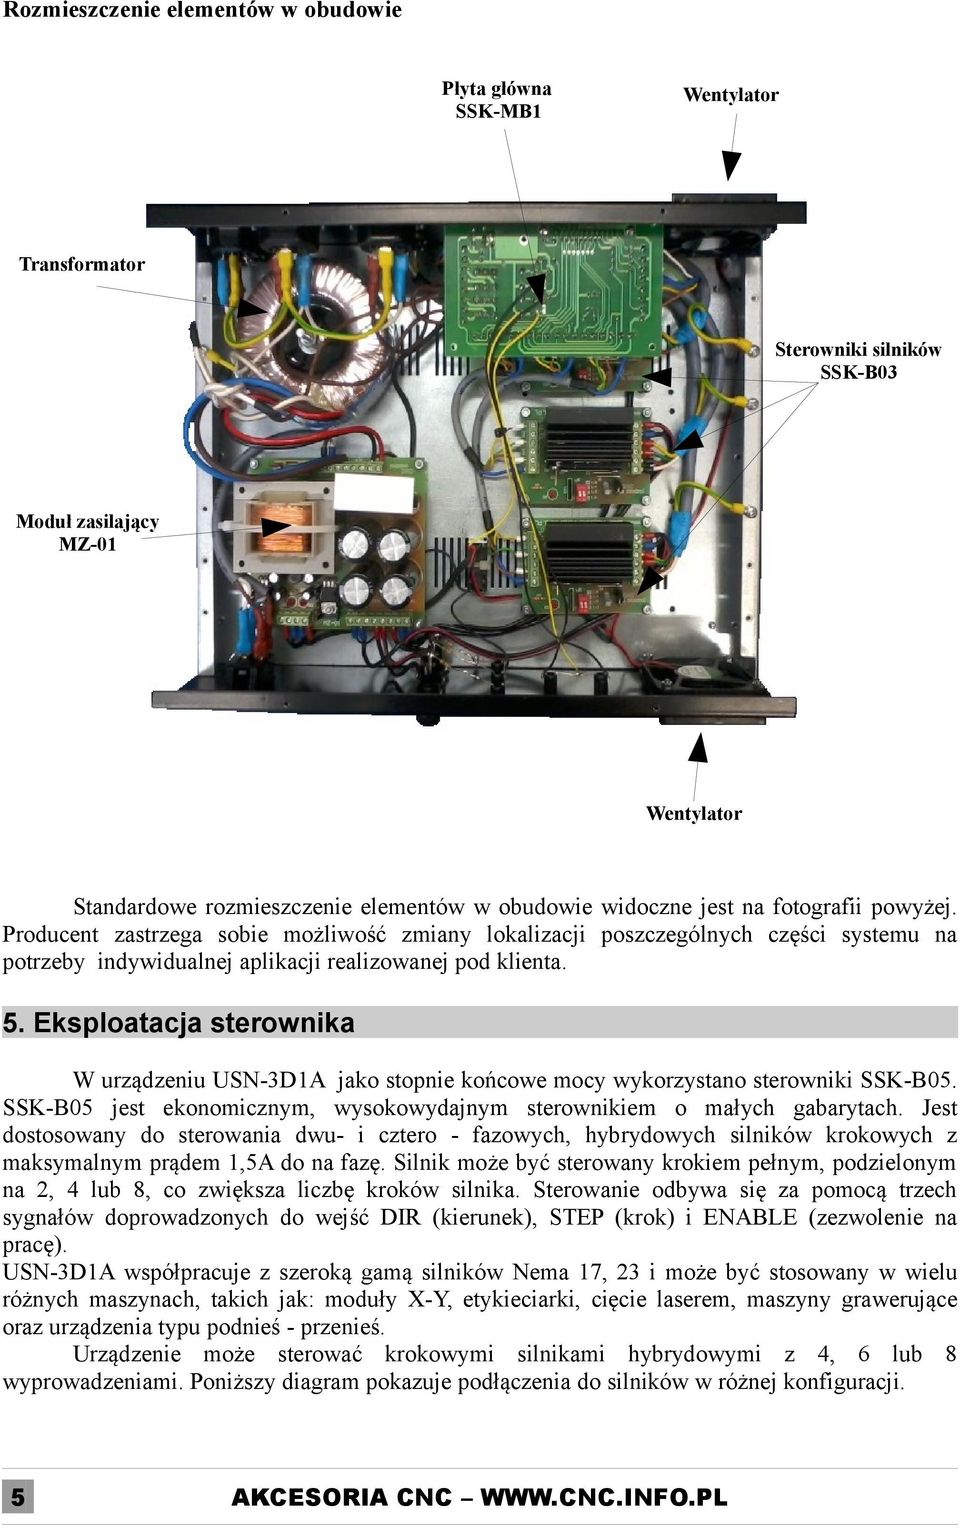 Eksploatacja sterownika W urządzeniu USN-3D1A jako stopnie końcowe mocy wykorzystano sterowniki SSK-B05. SSK-B05 jest ekonomicznym, wysokowydajnym sterownikiem o małych gabarytach.